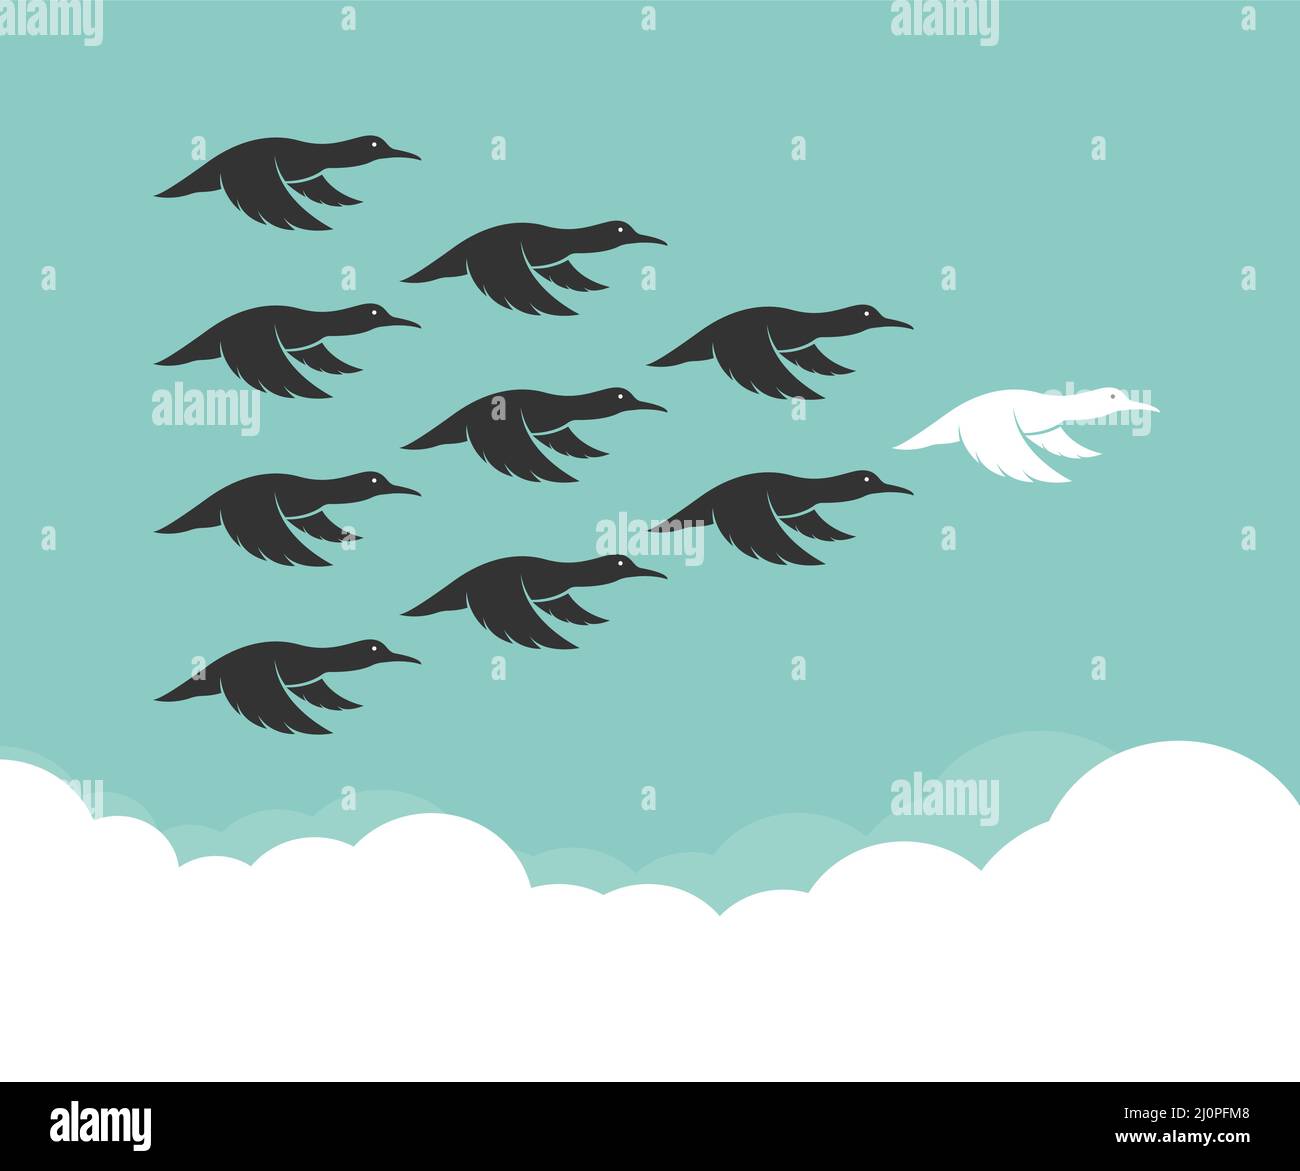 Troupeau de canards colvert volant dans le ciel, concept de leadership, canard sauvage. Illustration vectorielle superposée facile à modifier. Illustration de Vecteur